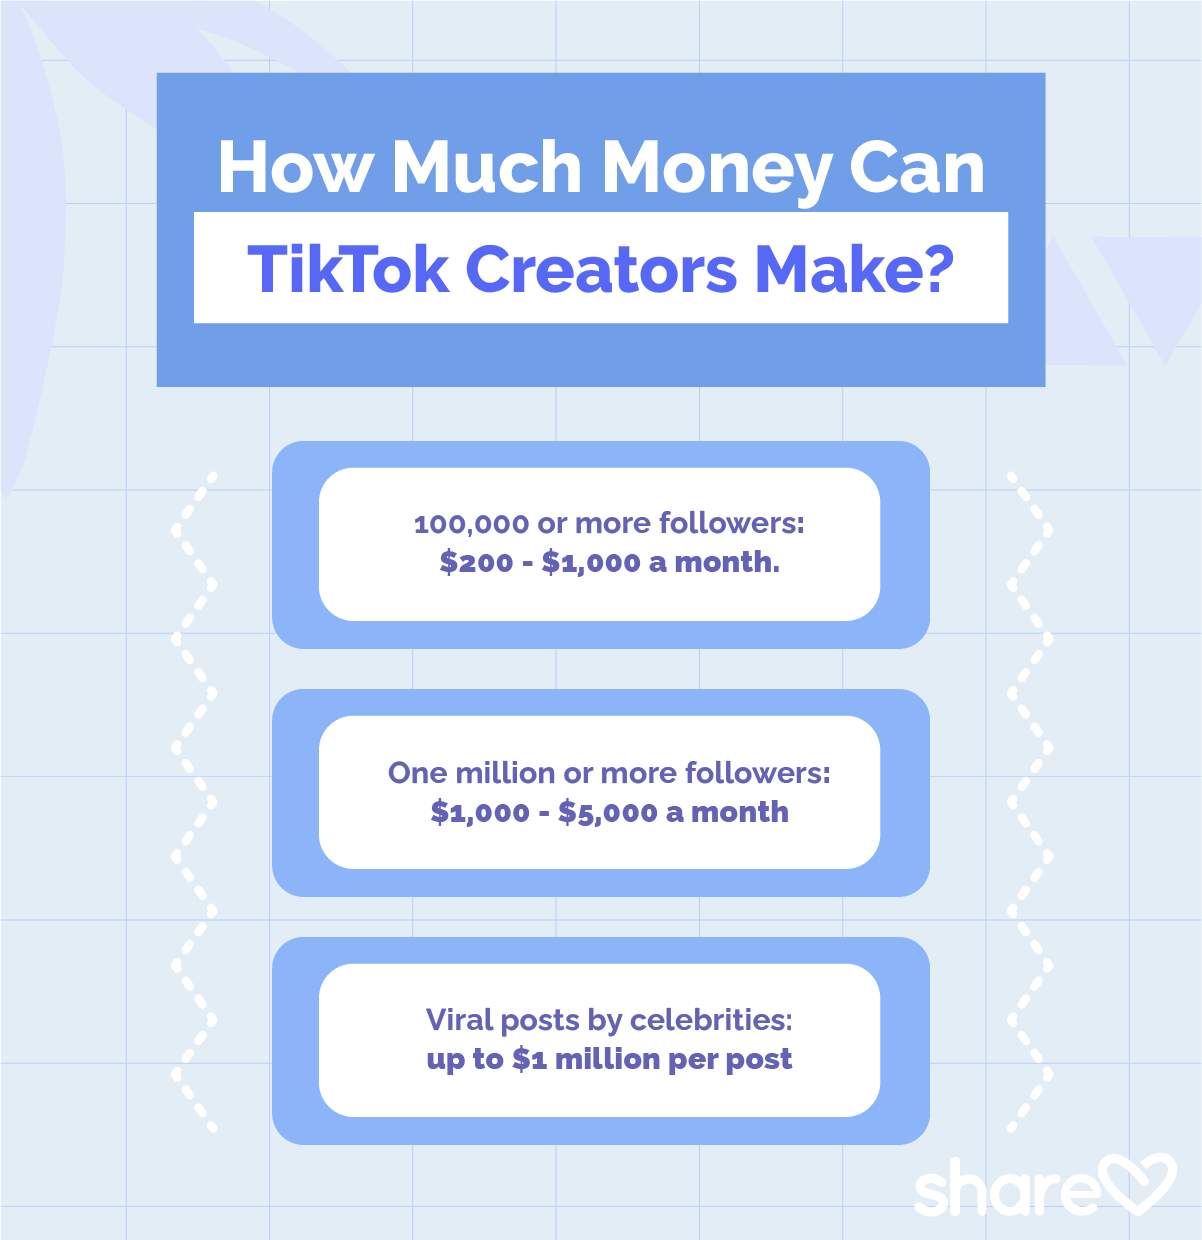 How Much Money Do TikTok Creators Make?